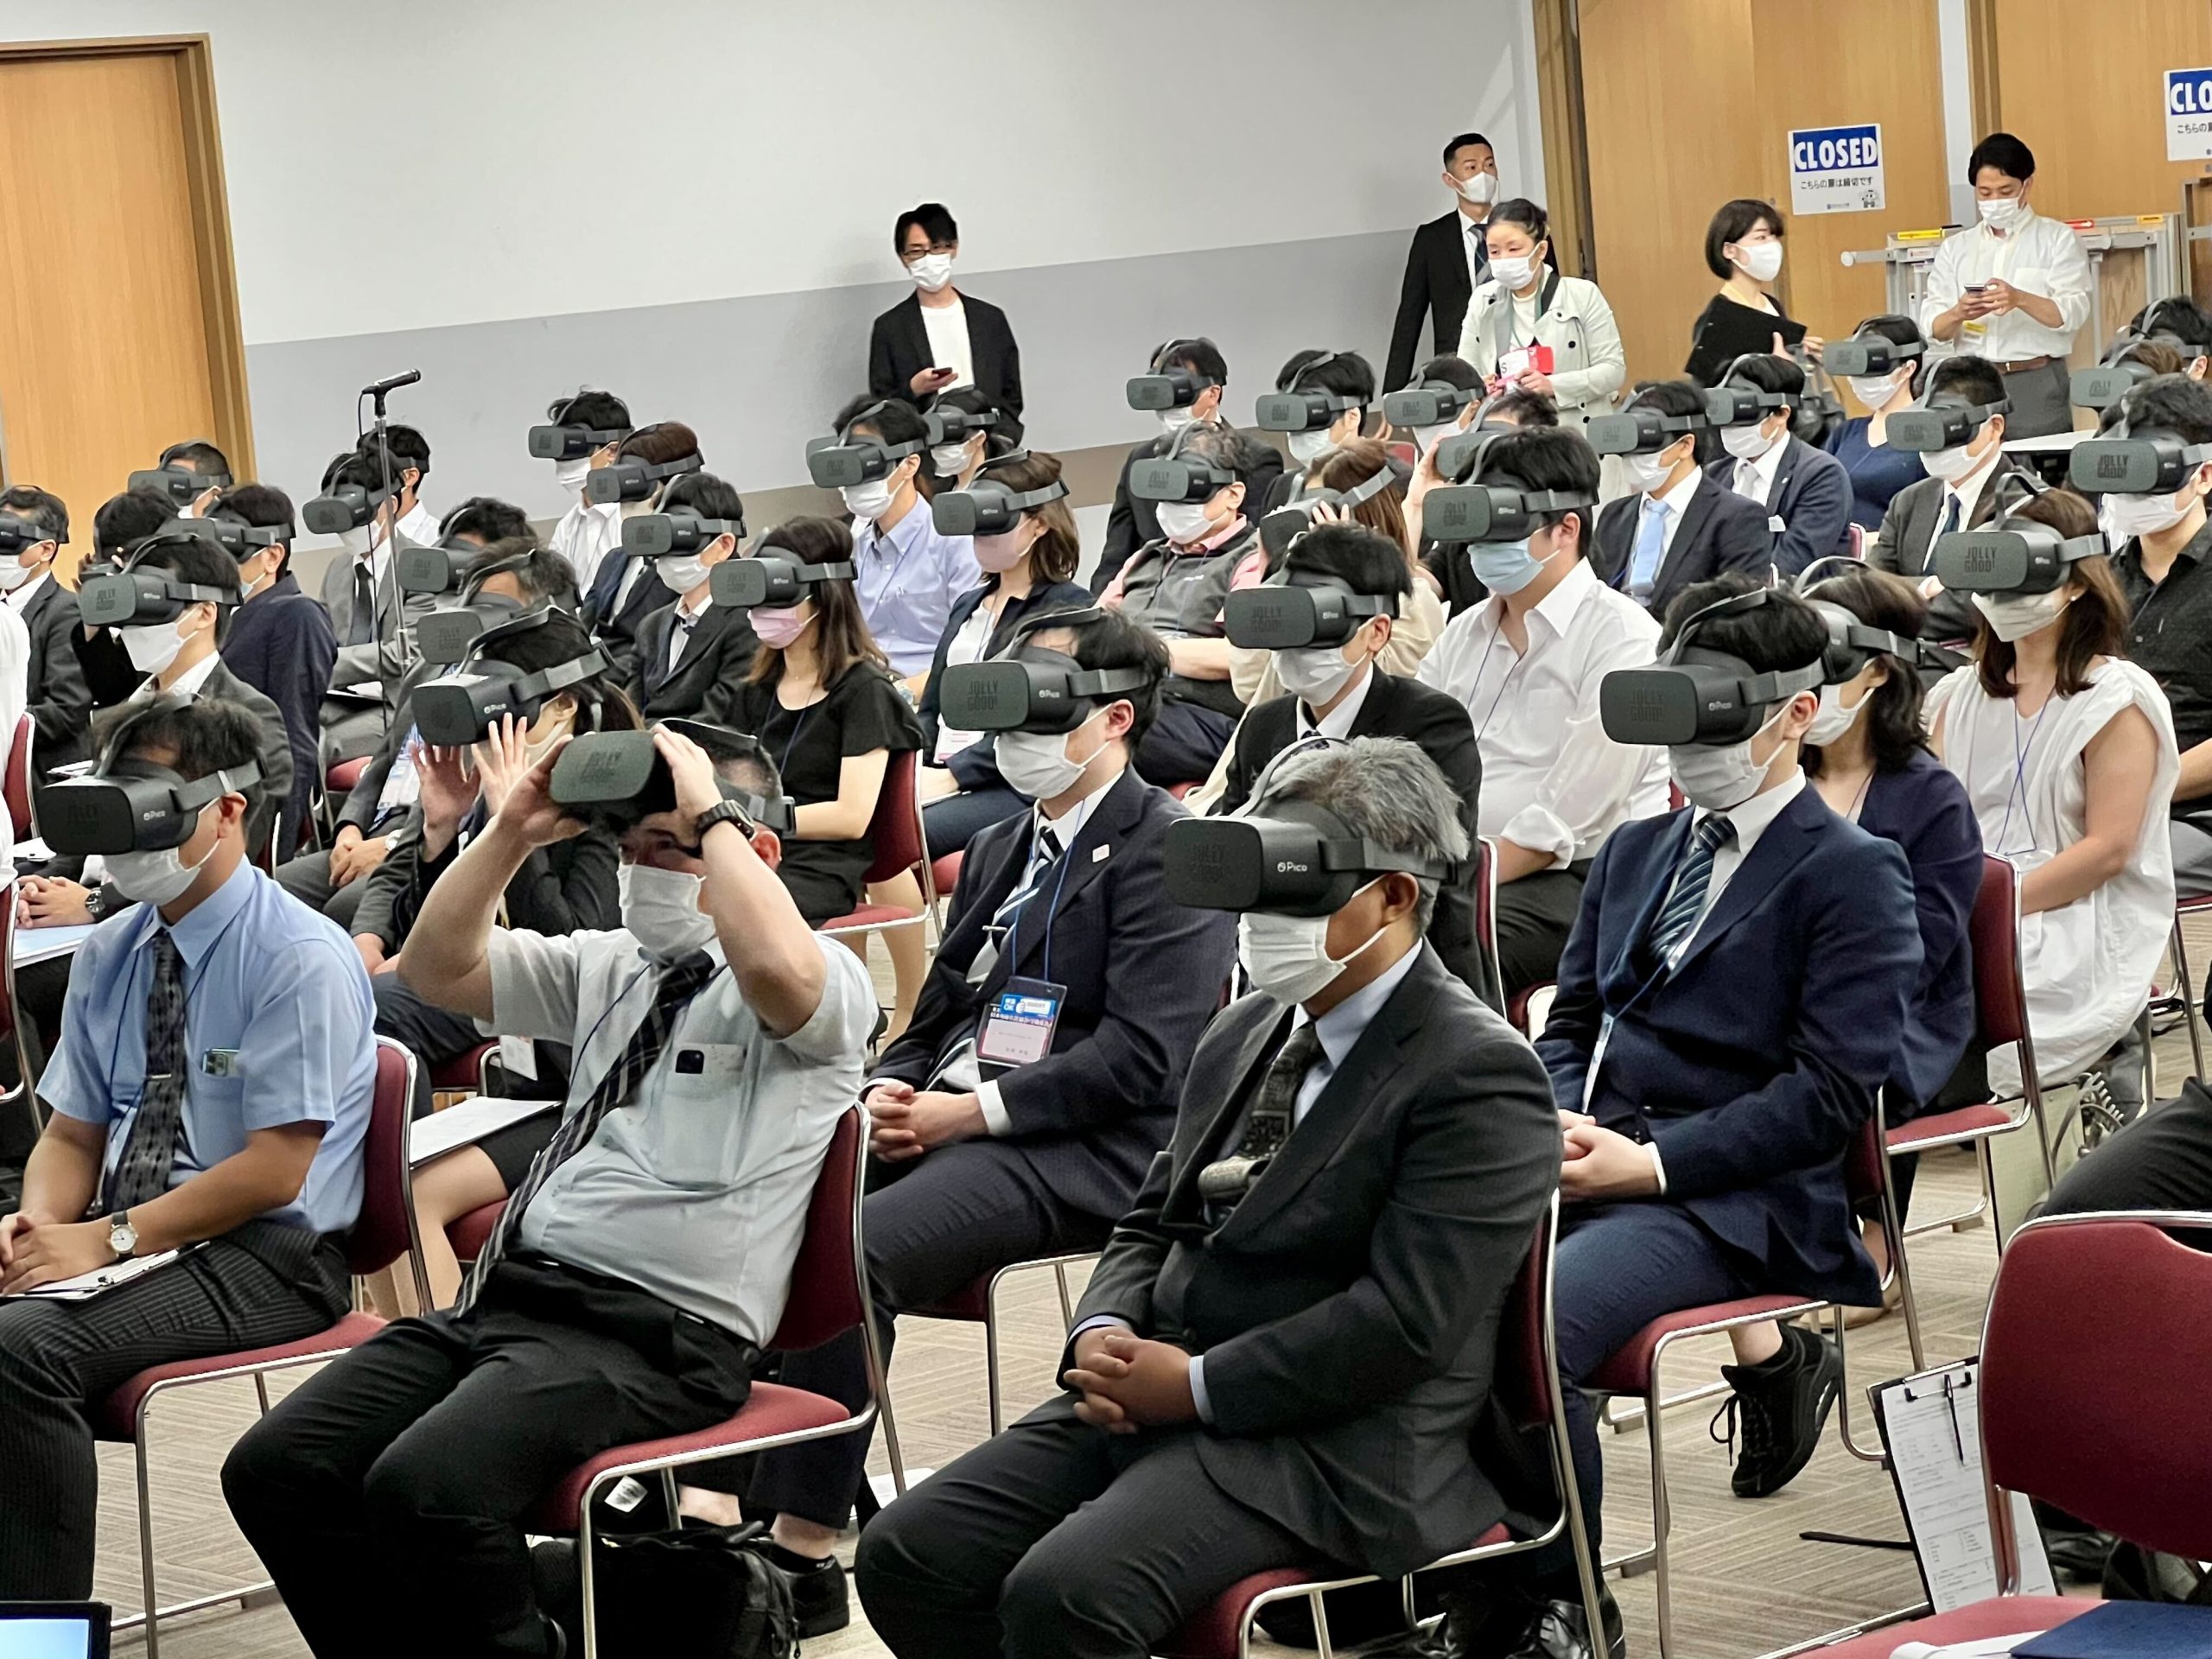 MBS毎日放送にて、日本外傷学会で実施したVR100台同時接続の大型医療VRセミナーが紹介されました